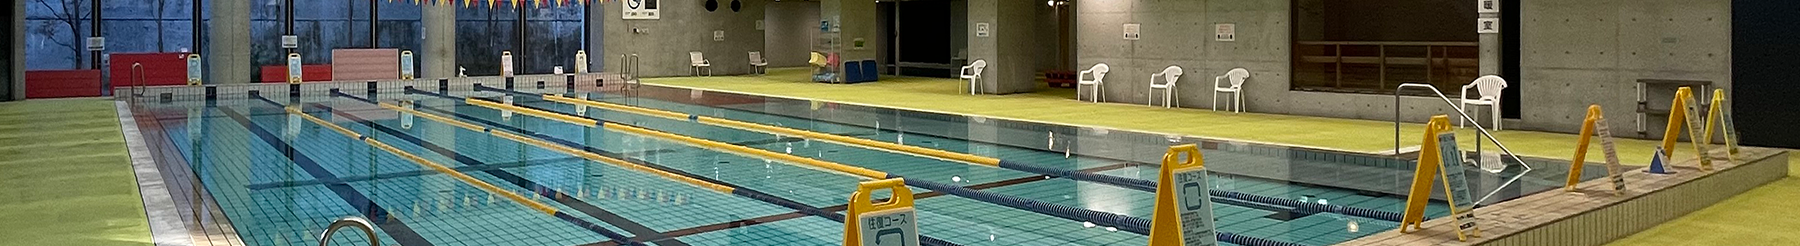 【お知らせ】中学校水泳指導に伴うプール一般開放時間の変更